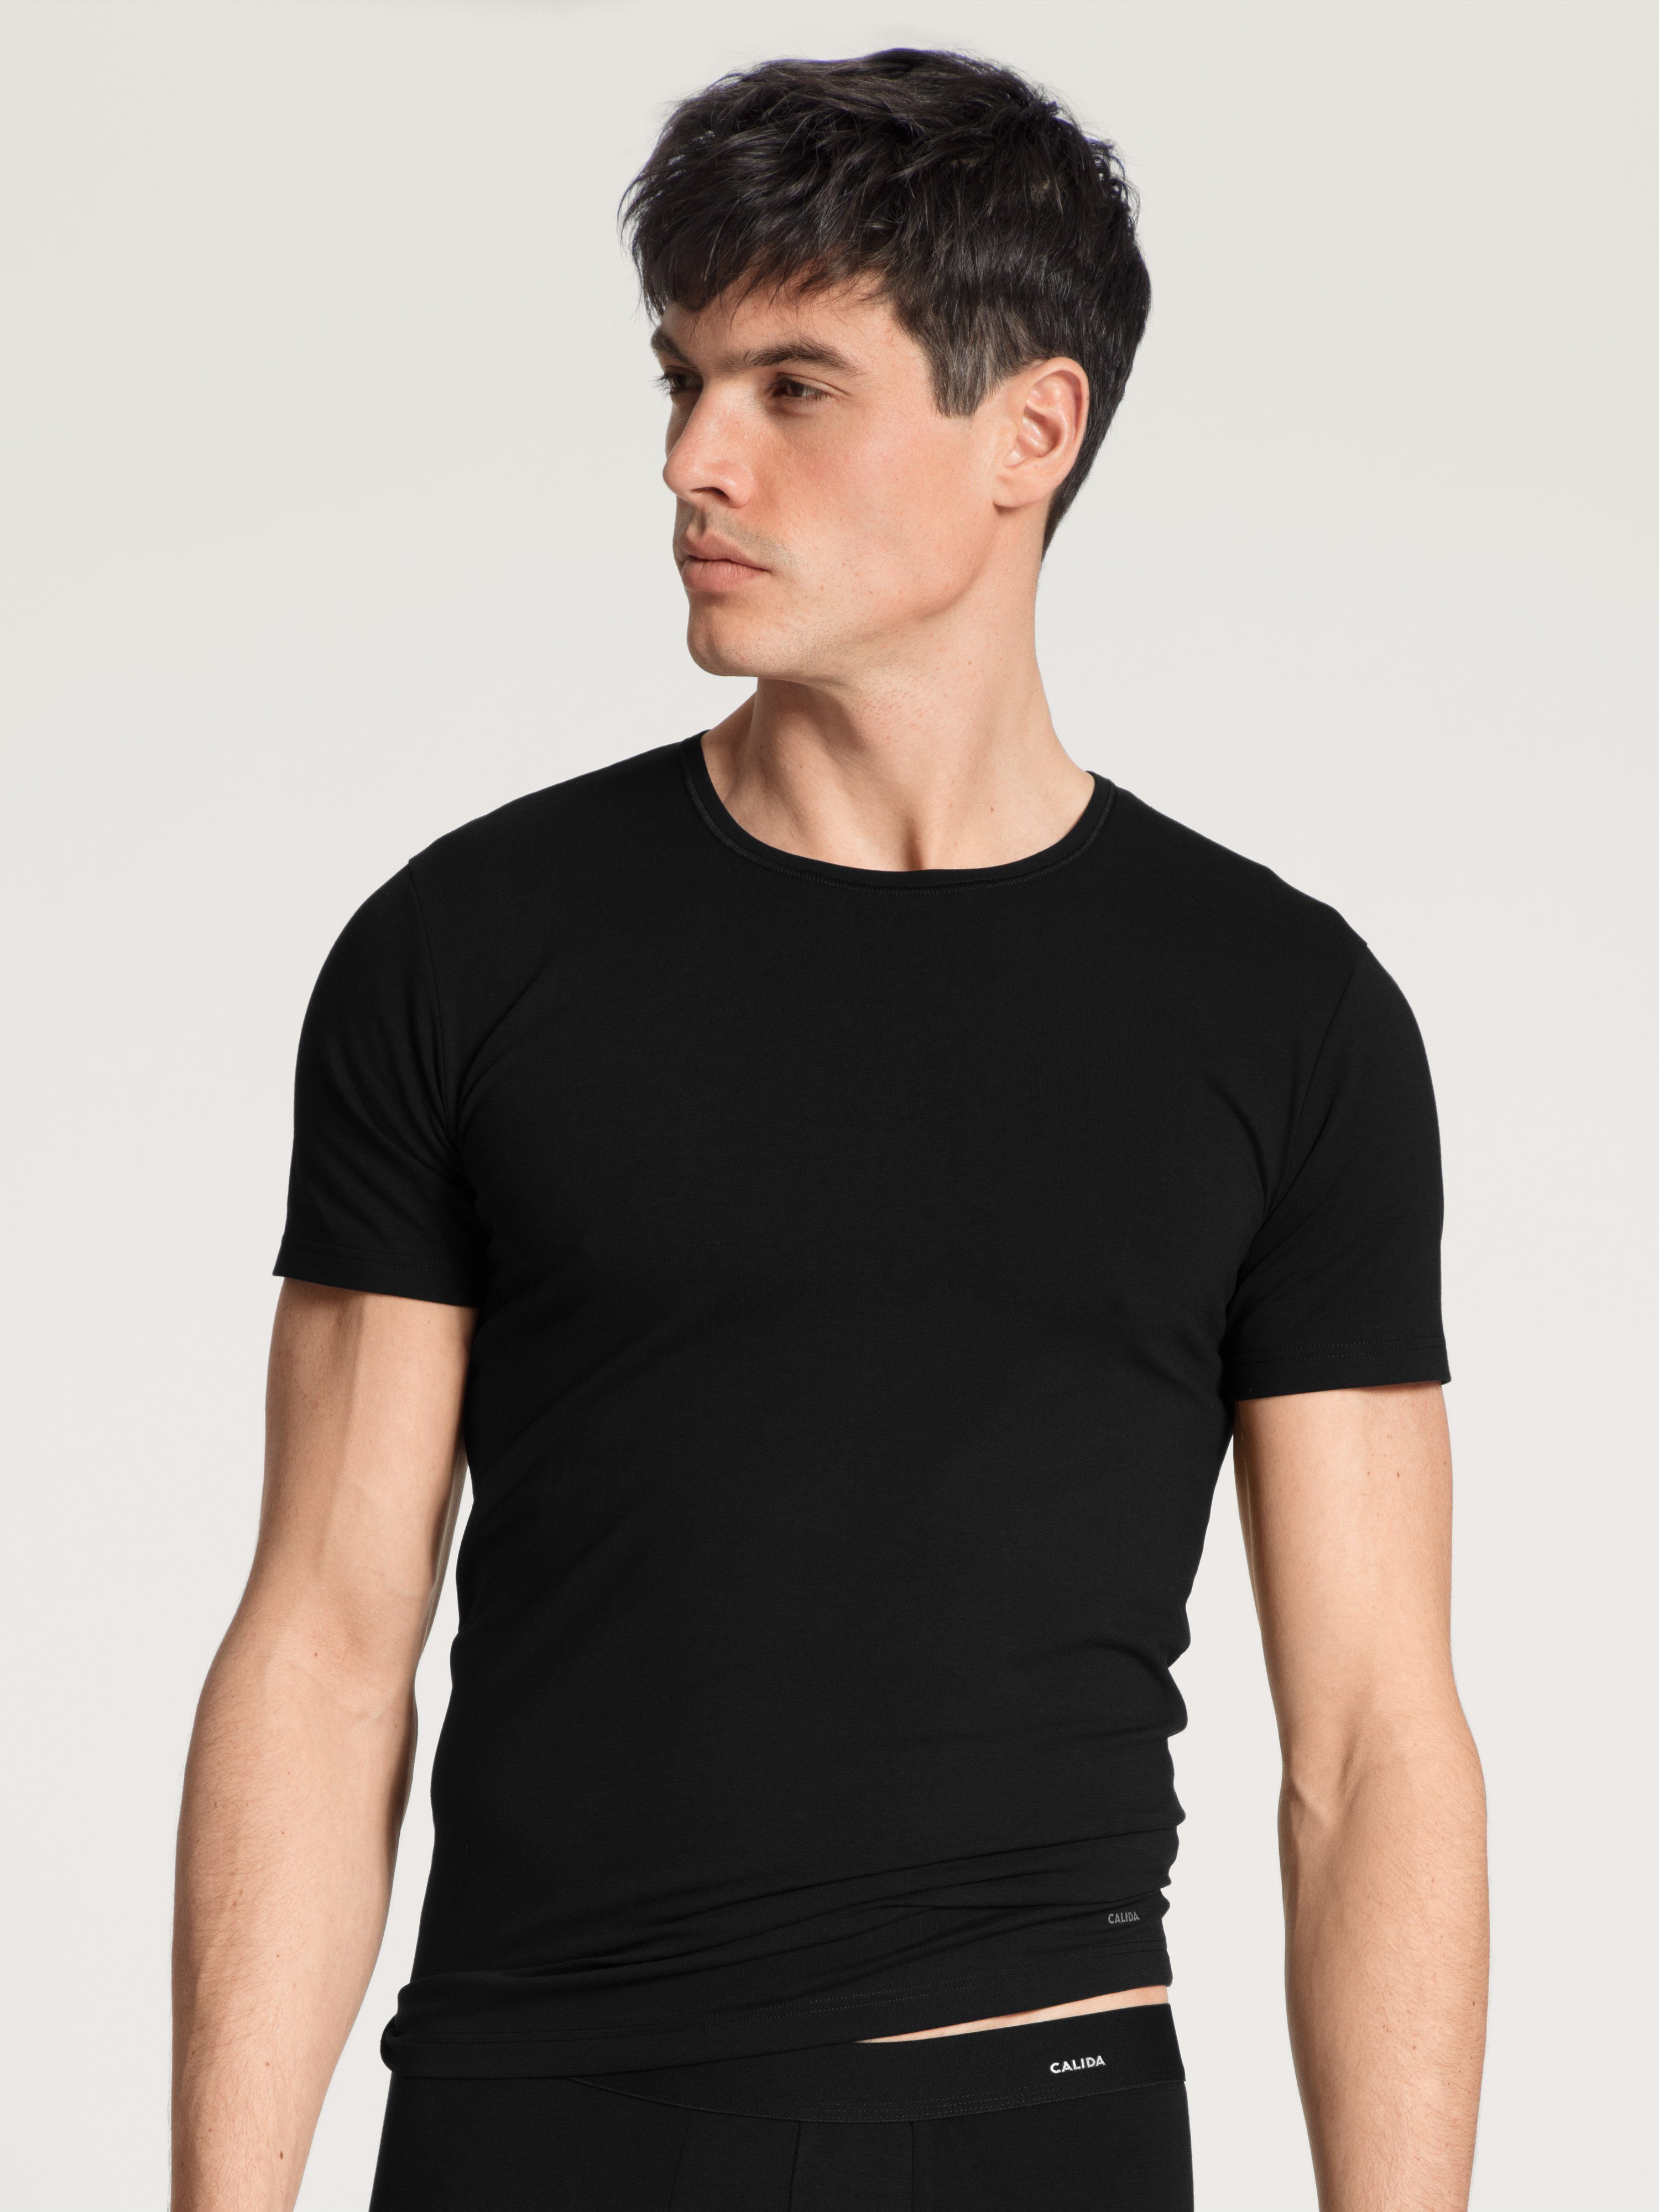 Luxusgütermarkt CALIDA Kurzarmshirt Cotton Code Rundhals-Shirt, schwarz moderner Schnitt